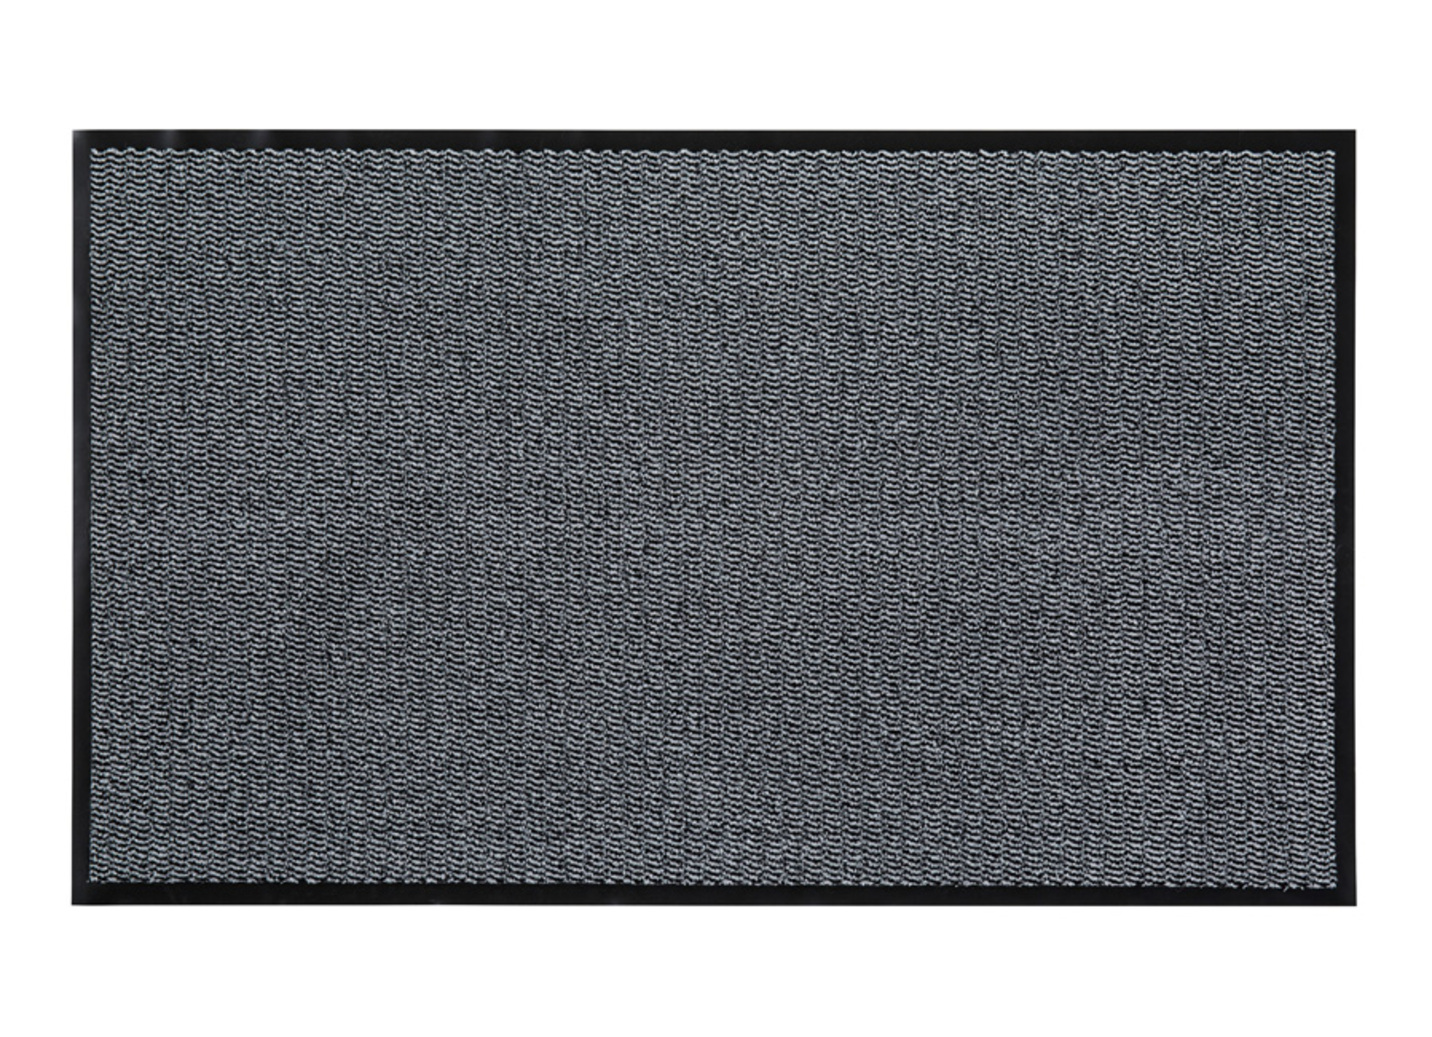 Andiamo Schmutzfangmatten für innen und außen, Größe 101 (40x 60 cm), Hellgrau von BADER